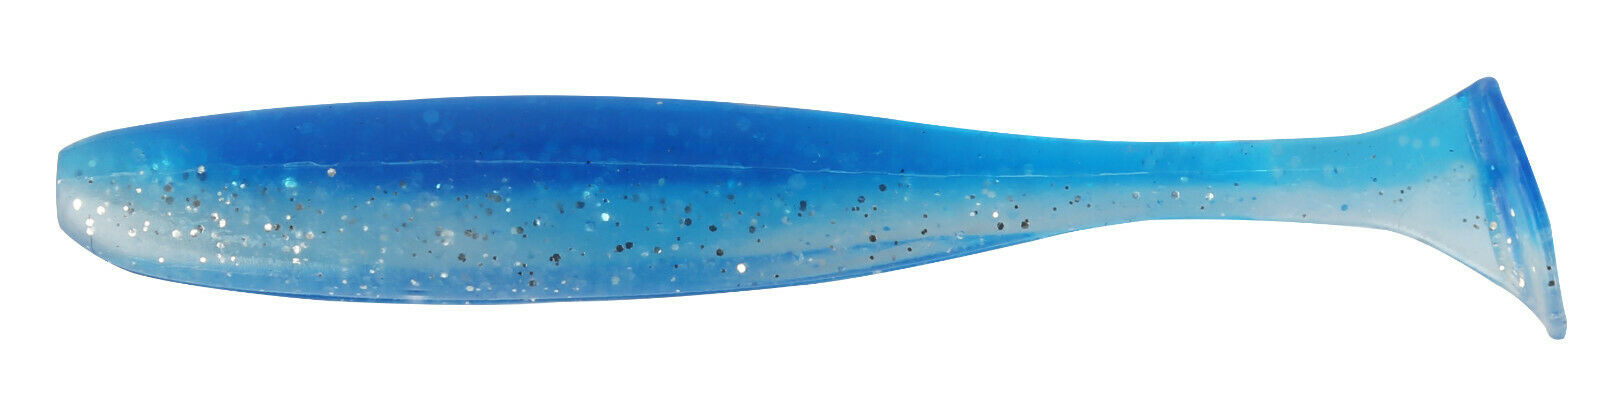 Colorado Shad Raubfischk?der 5-12cm Gummifische Hecht Zander Kunstk?der K?der(7,5cm / 12 St?ck,artic blue glitter)